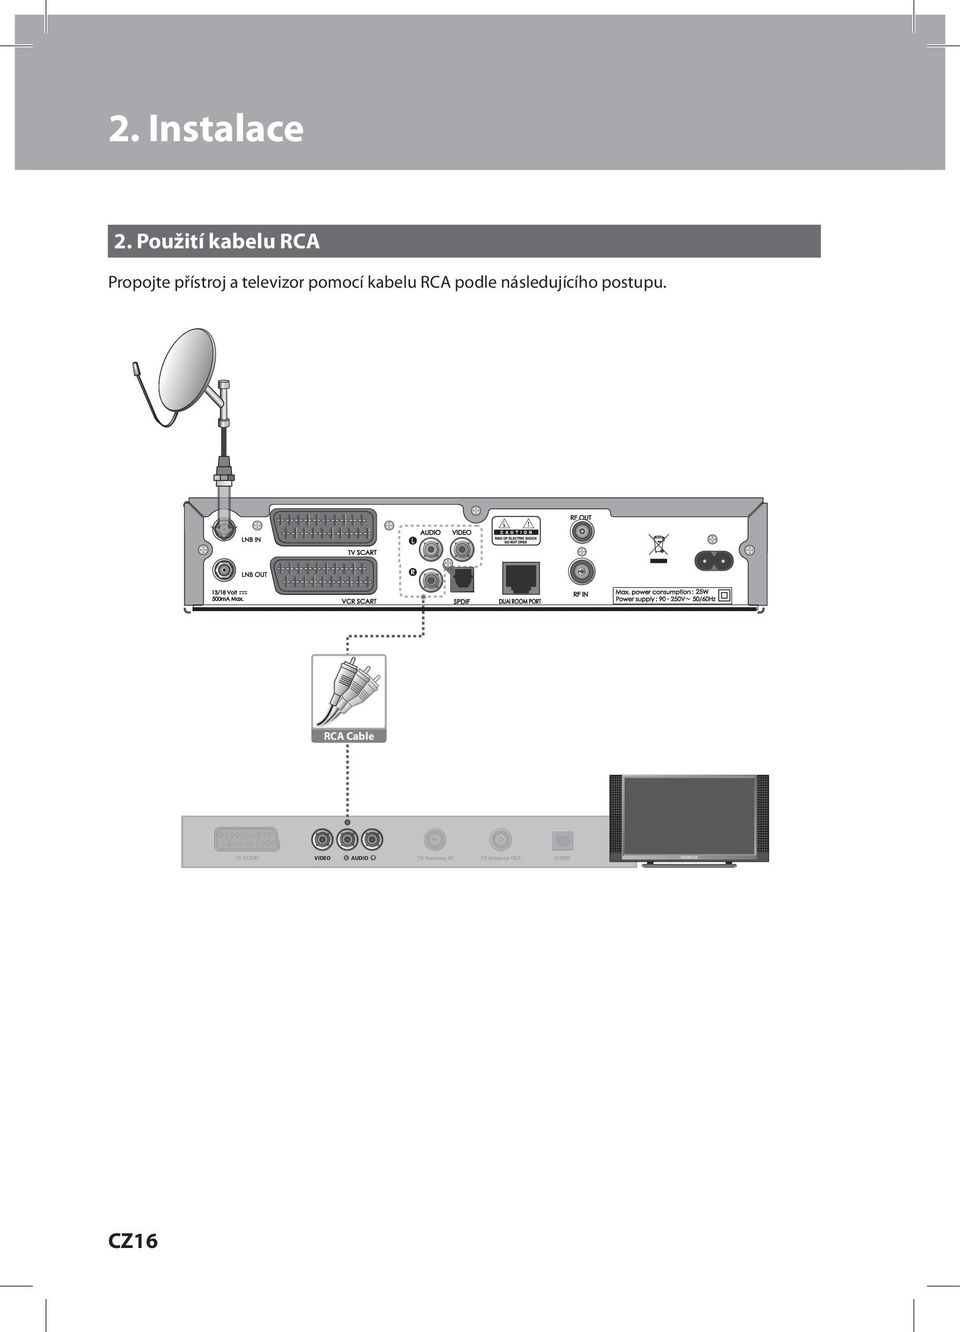 Antenna OUT S/PDIF Propojte přístroj a televizor pomocí kabelu